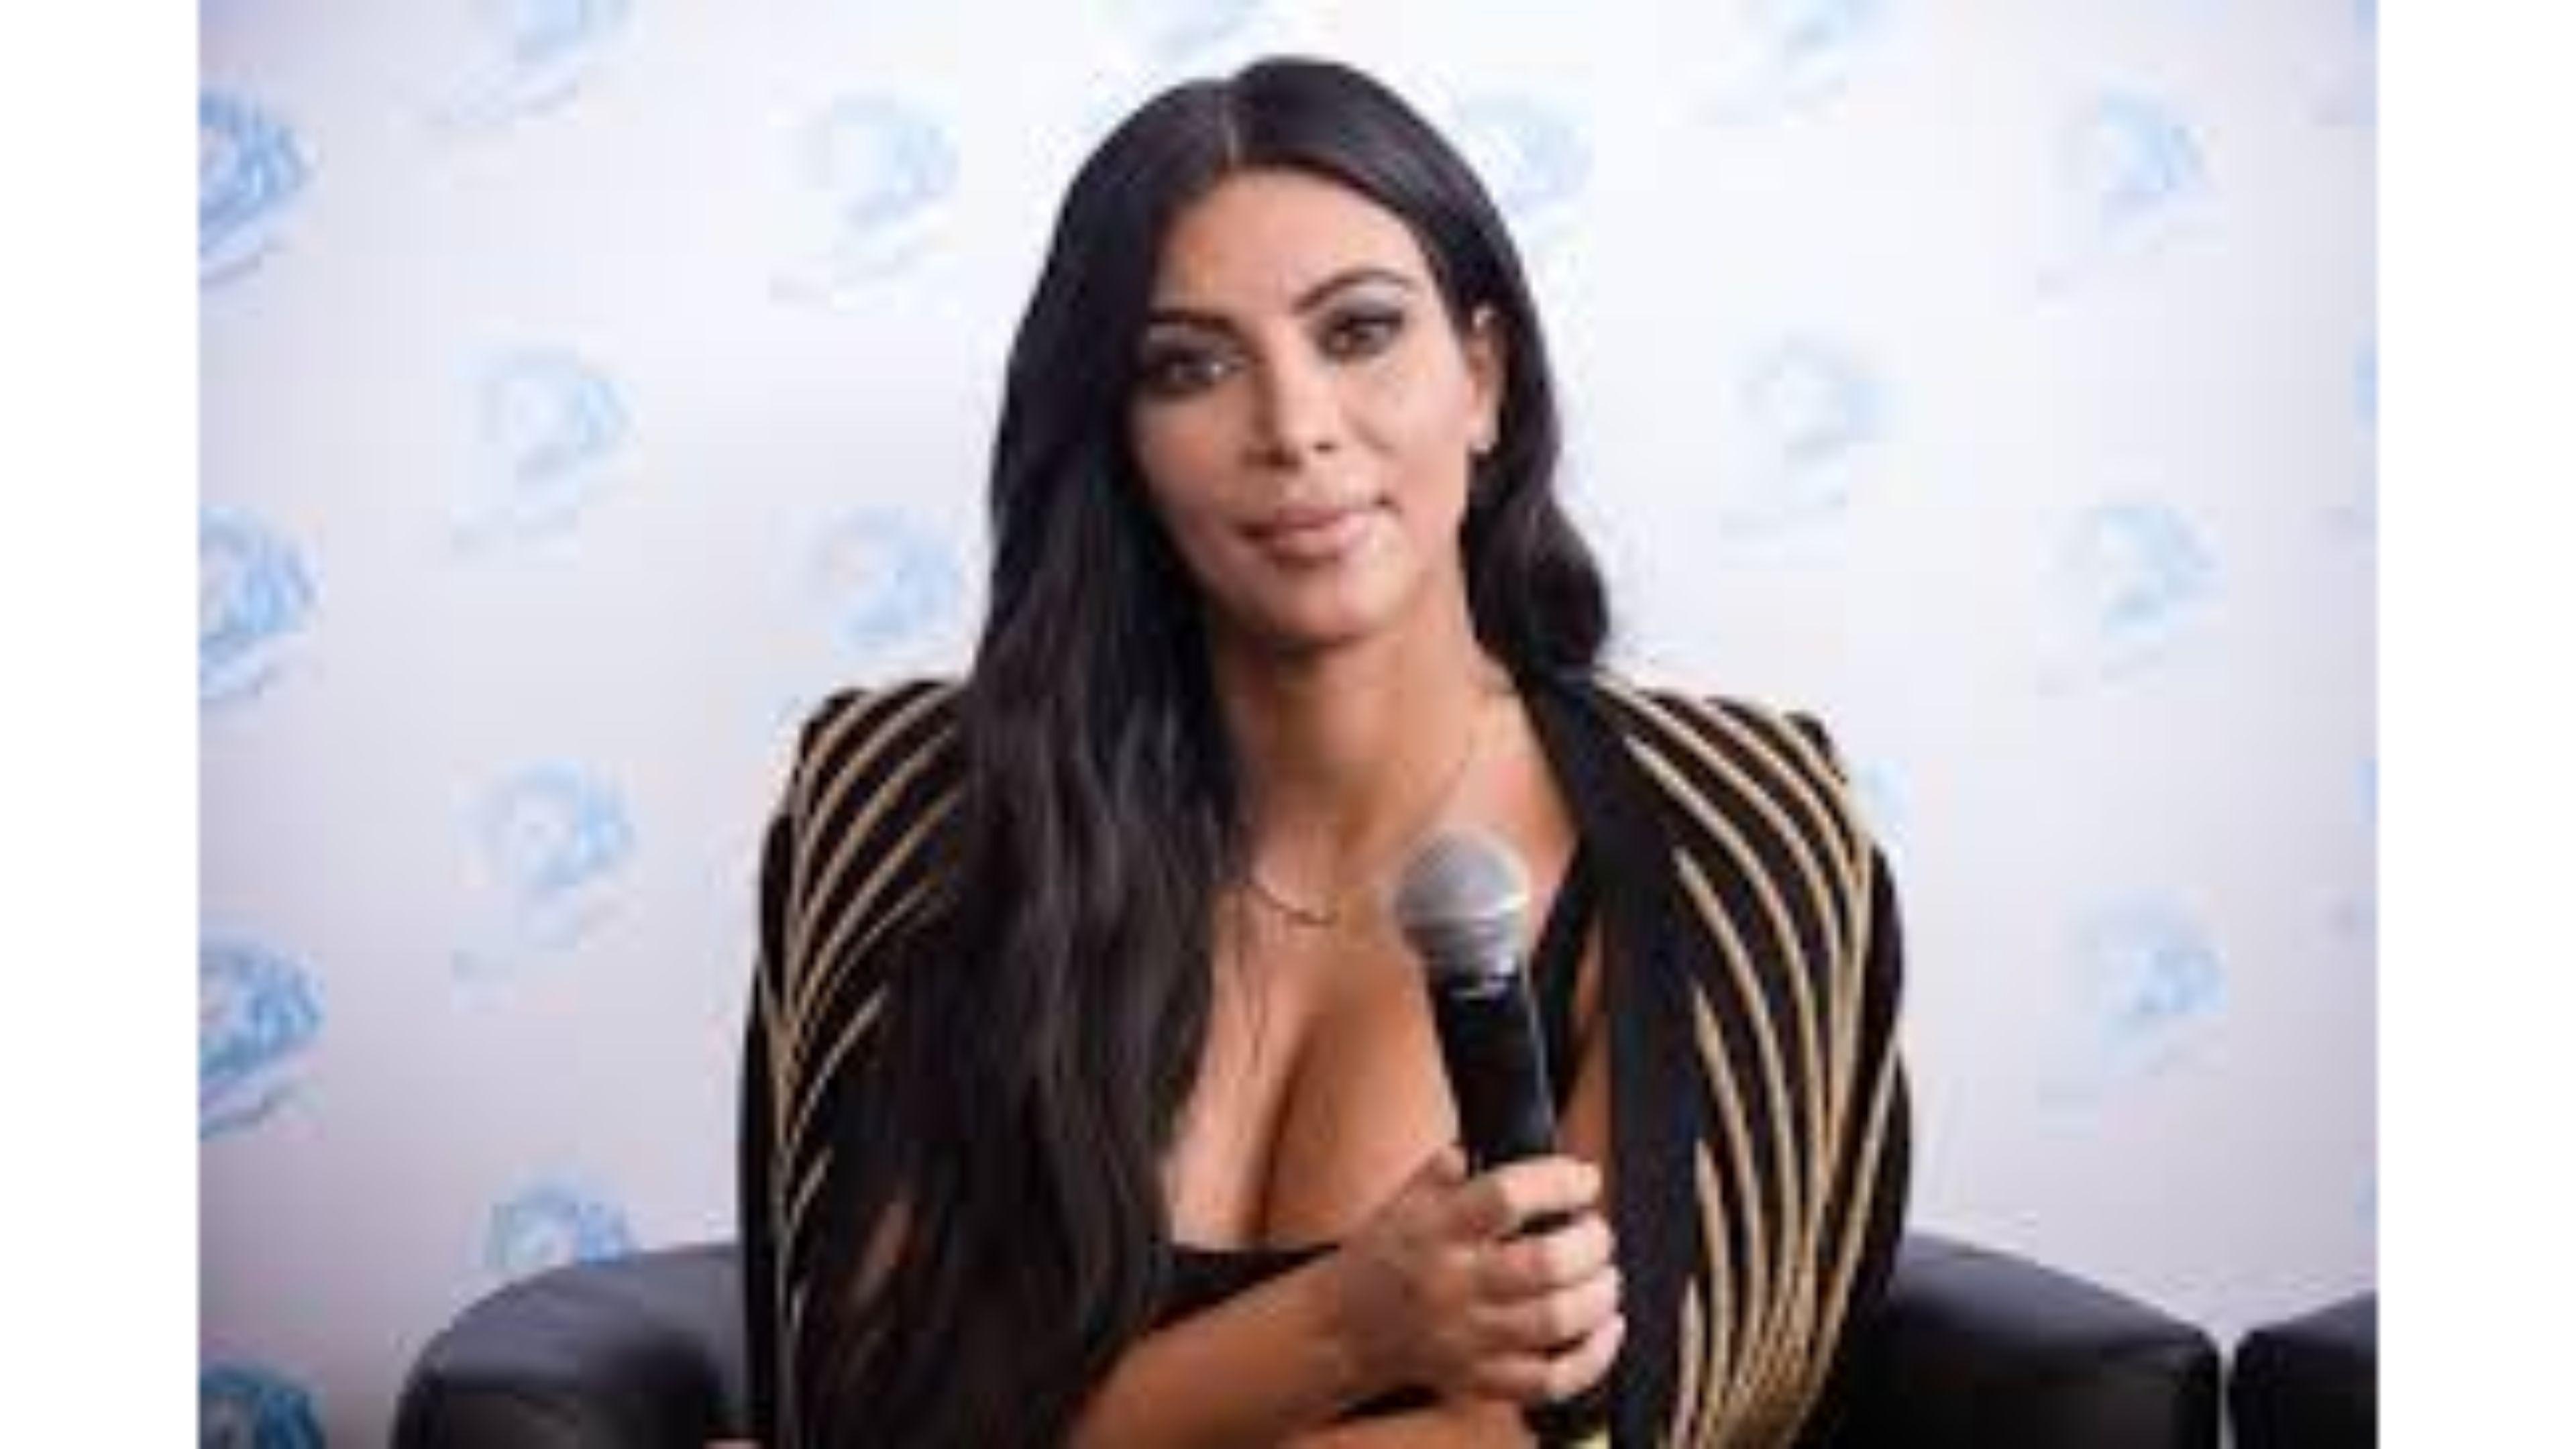 Hot 2016 Kim Kardashian 4K Wallpaper. Free 4K Wallpaper